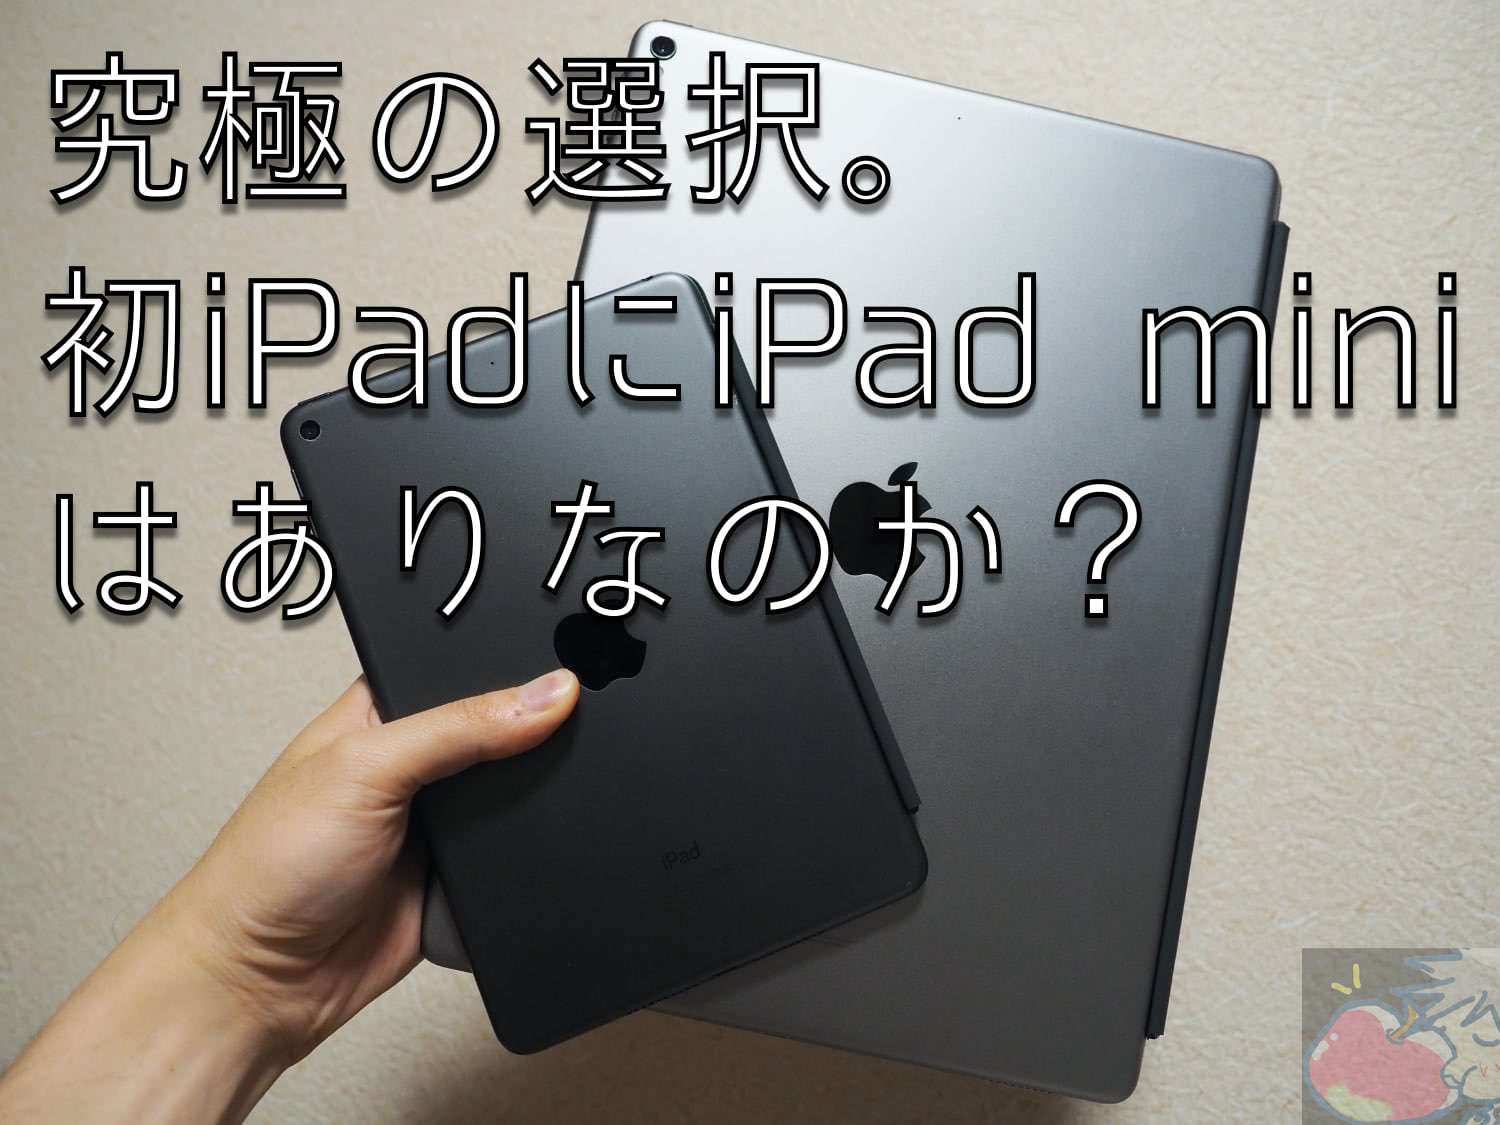 究極の選択。初めてのiPadにiPad miniはあり？なし？